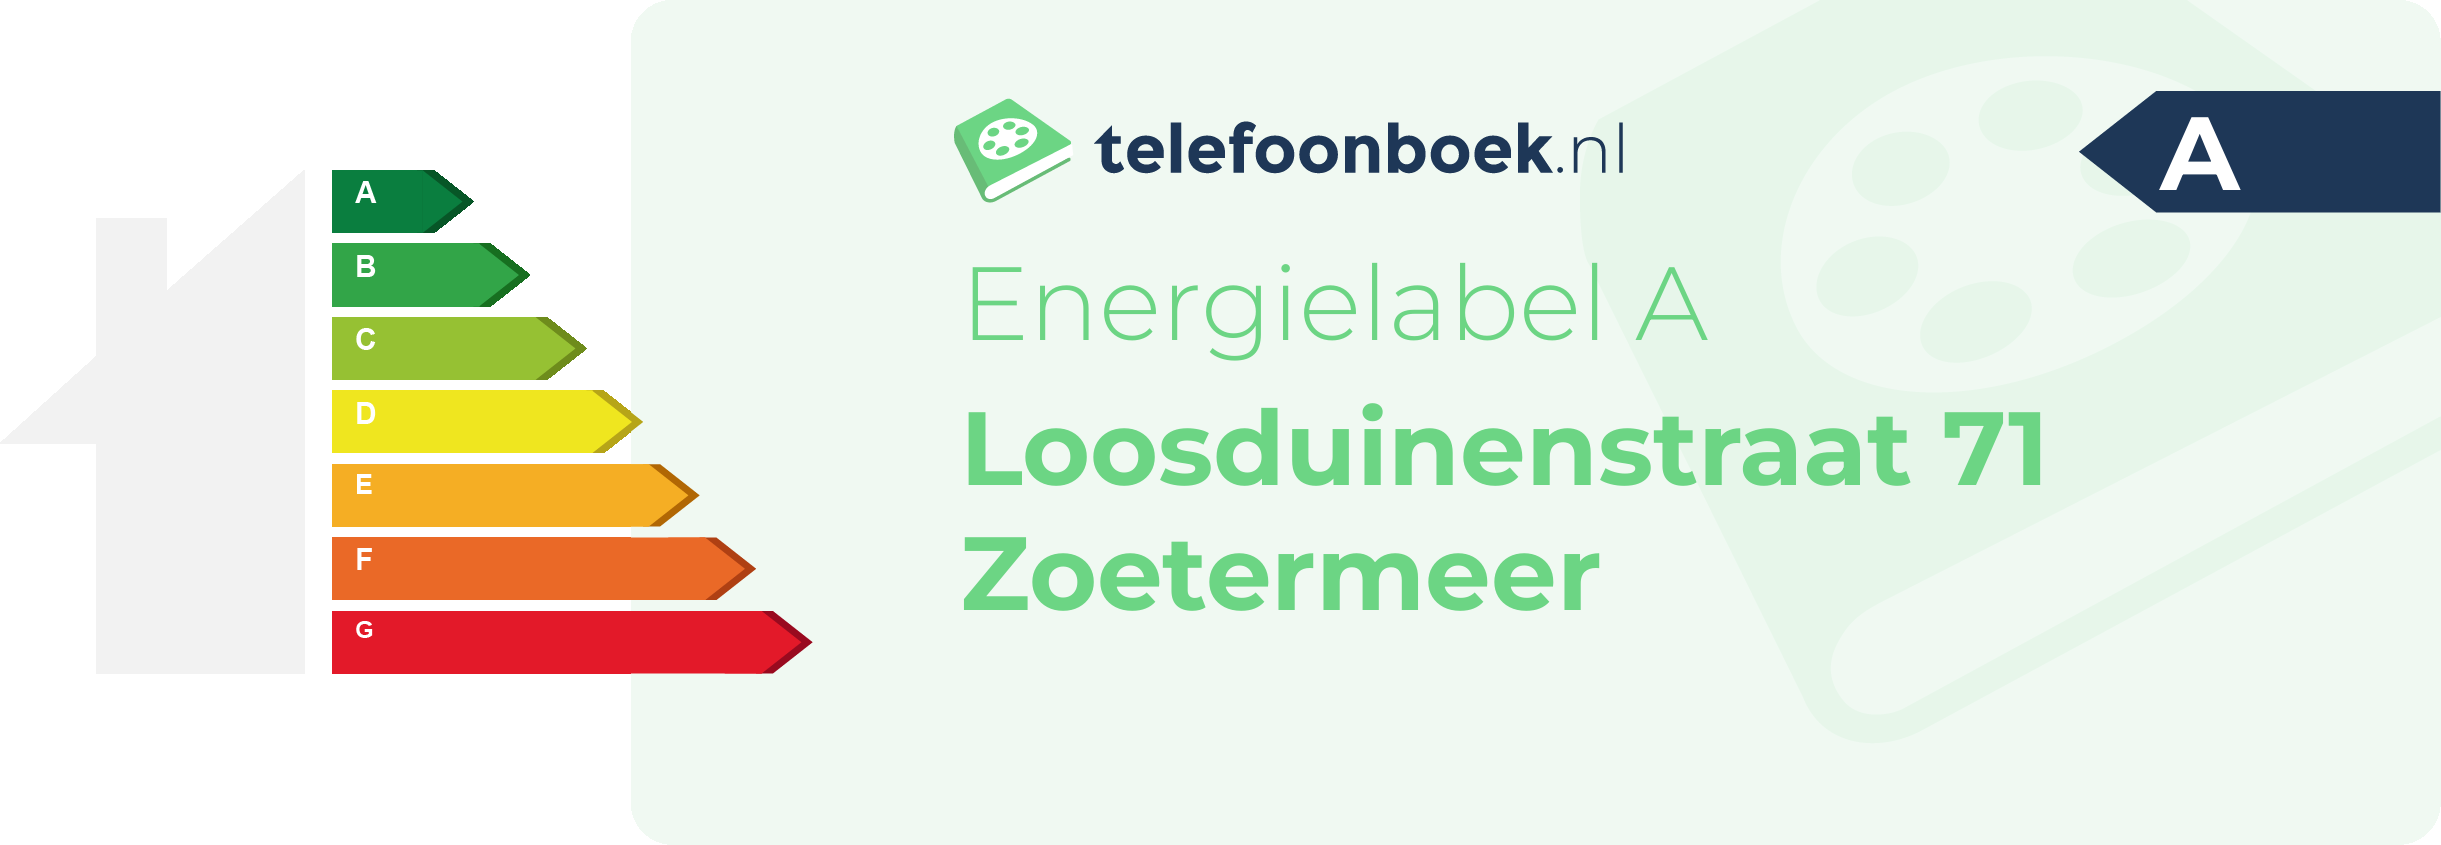 Energielabel Loosduinenstraat 71 Zoetermeer